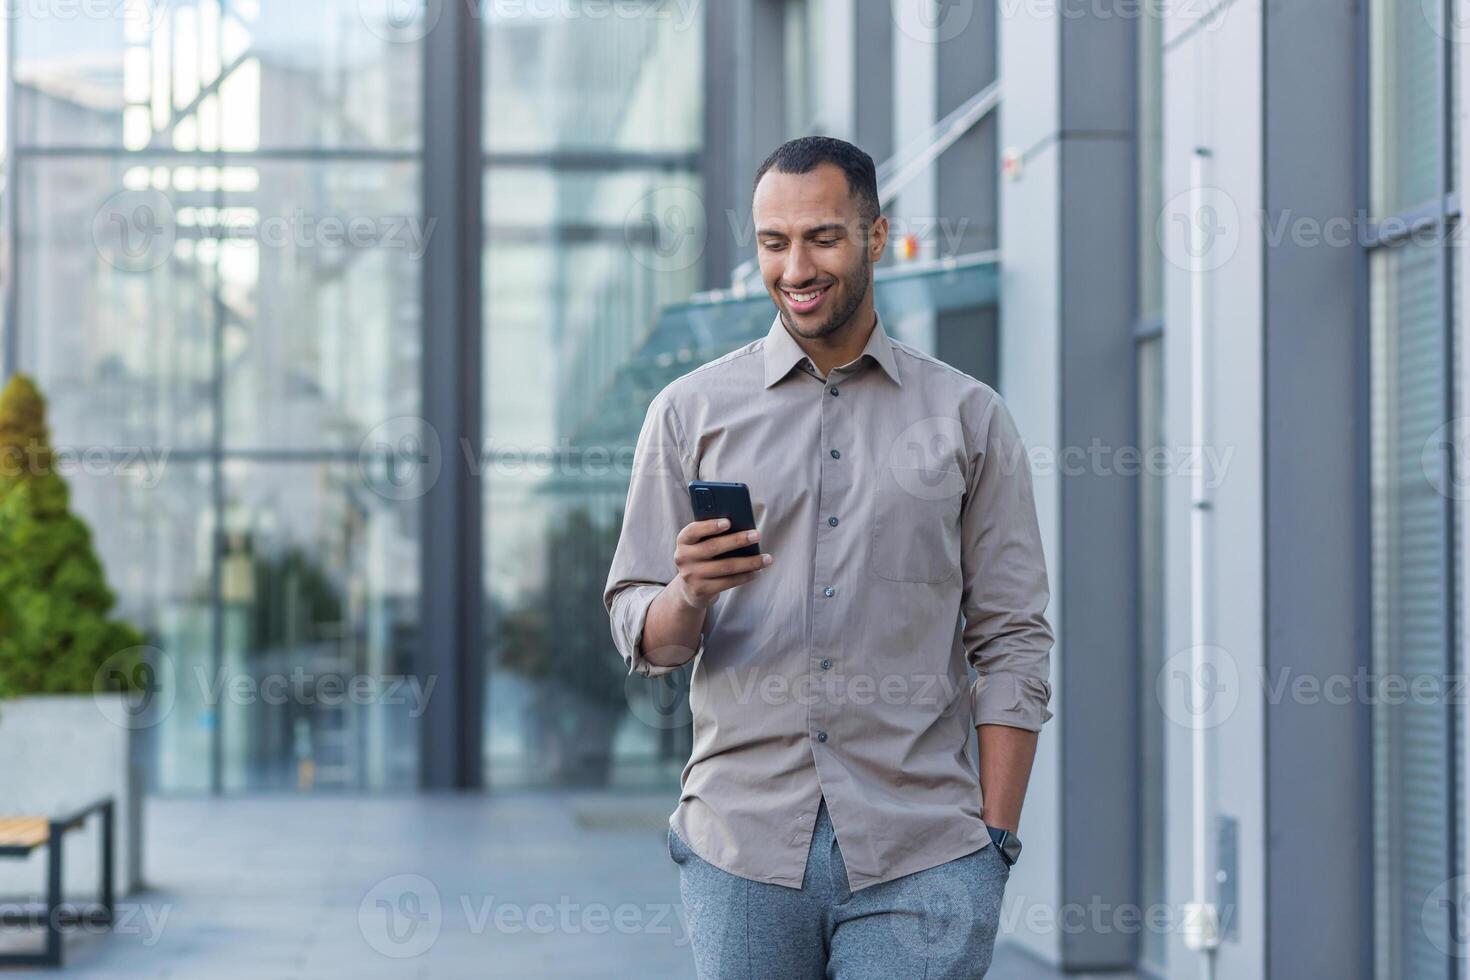 exitoso joven africano americano hombre caminando fuera de oficina edificio, ingeniero software desarrollador programador sonriente y contento utilizando prueba aplicación en teléfono, contento satisfecho con resultado foto